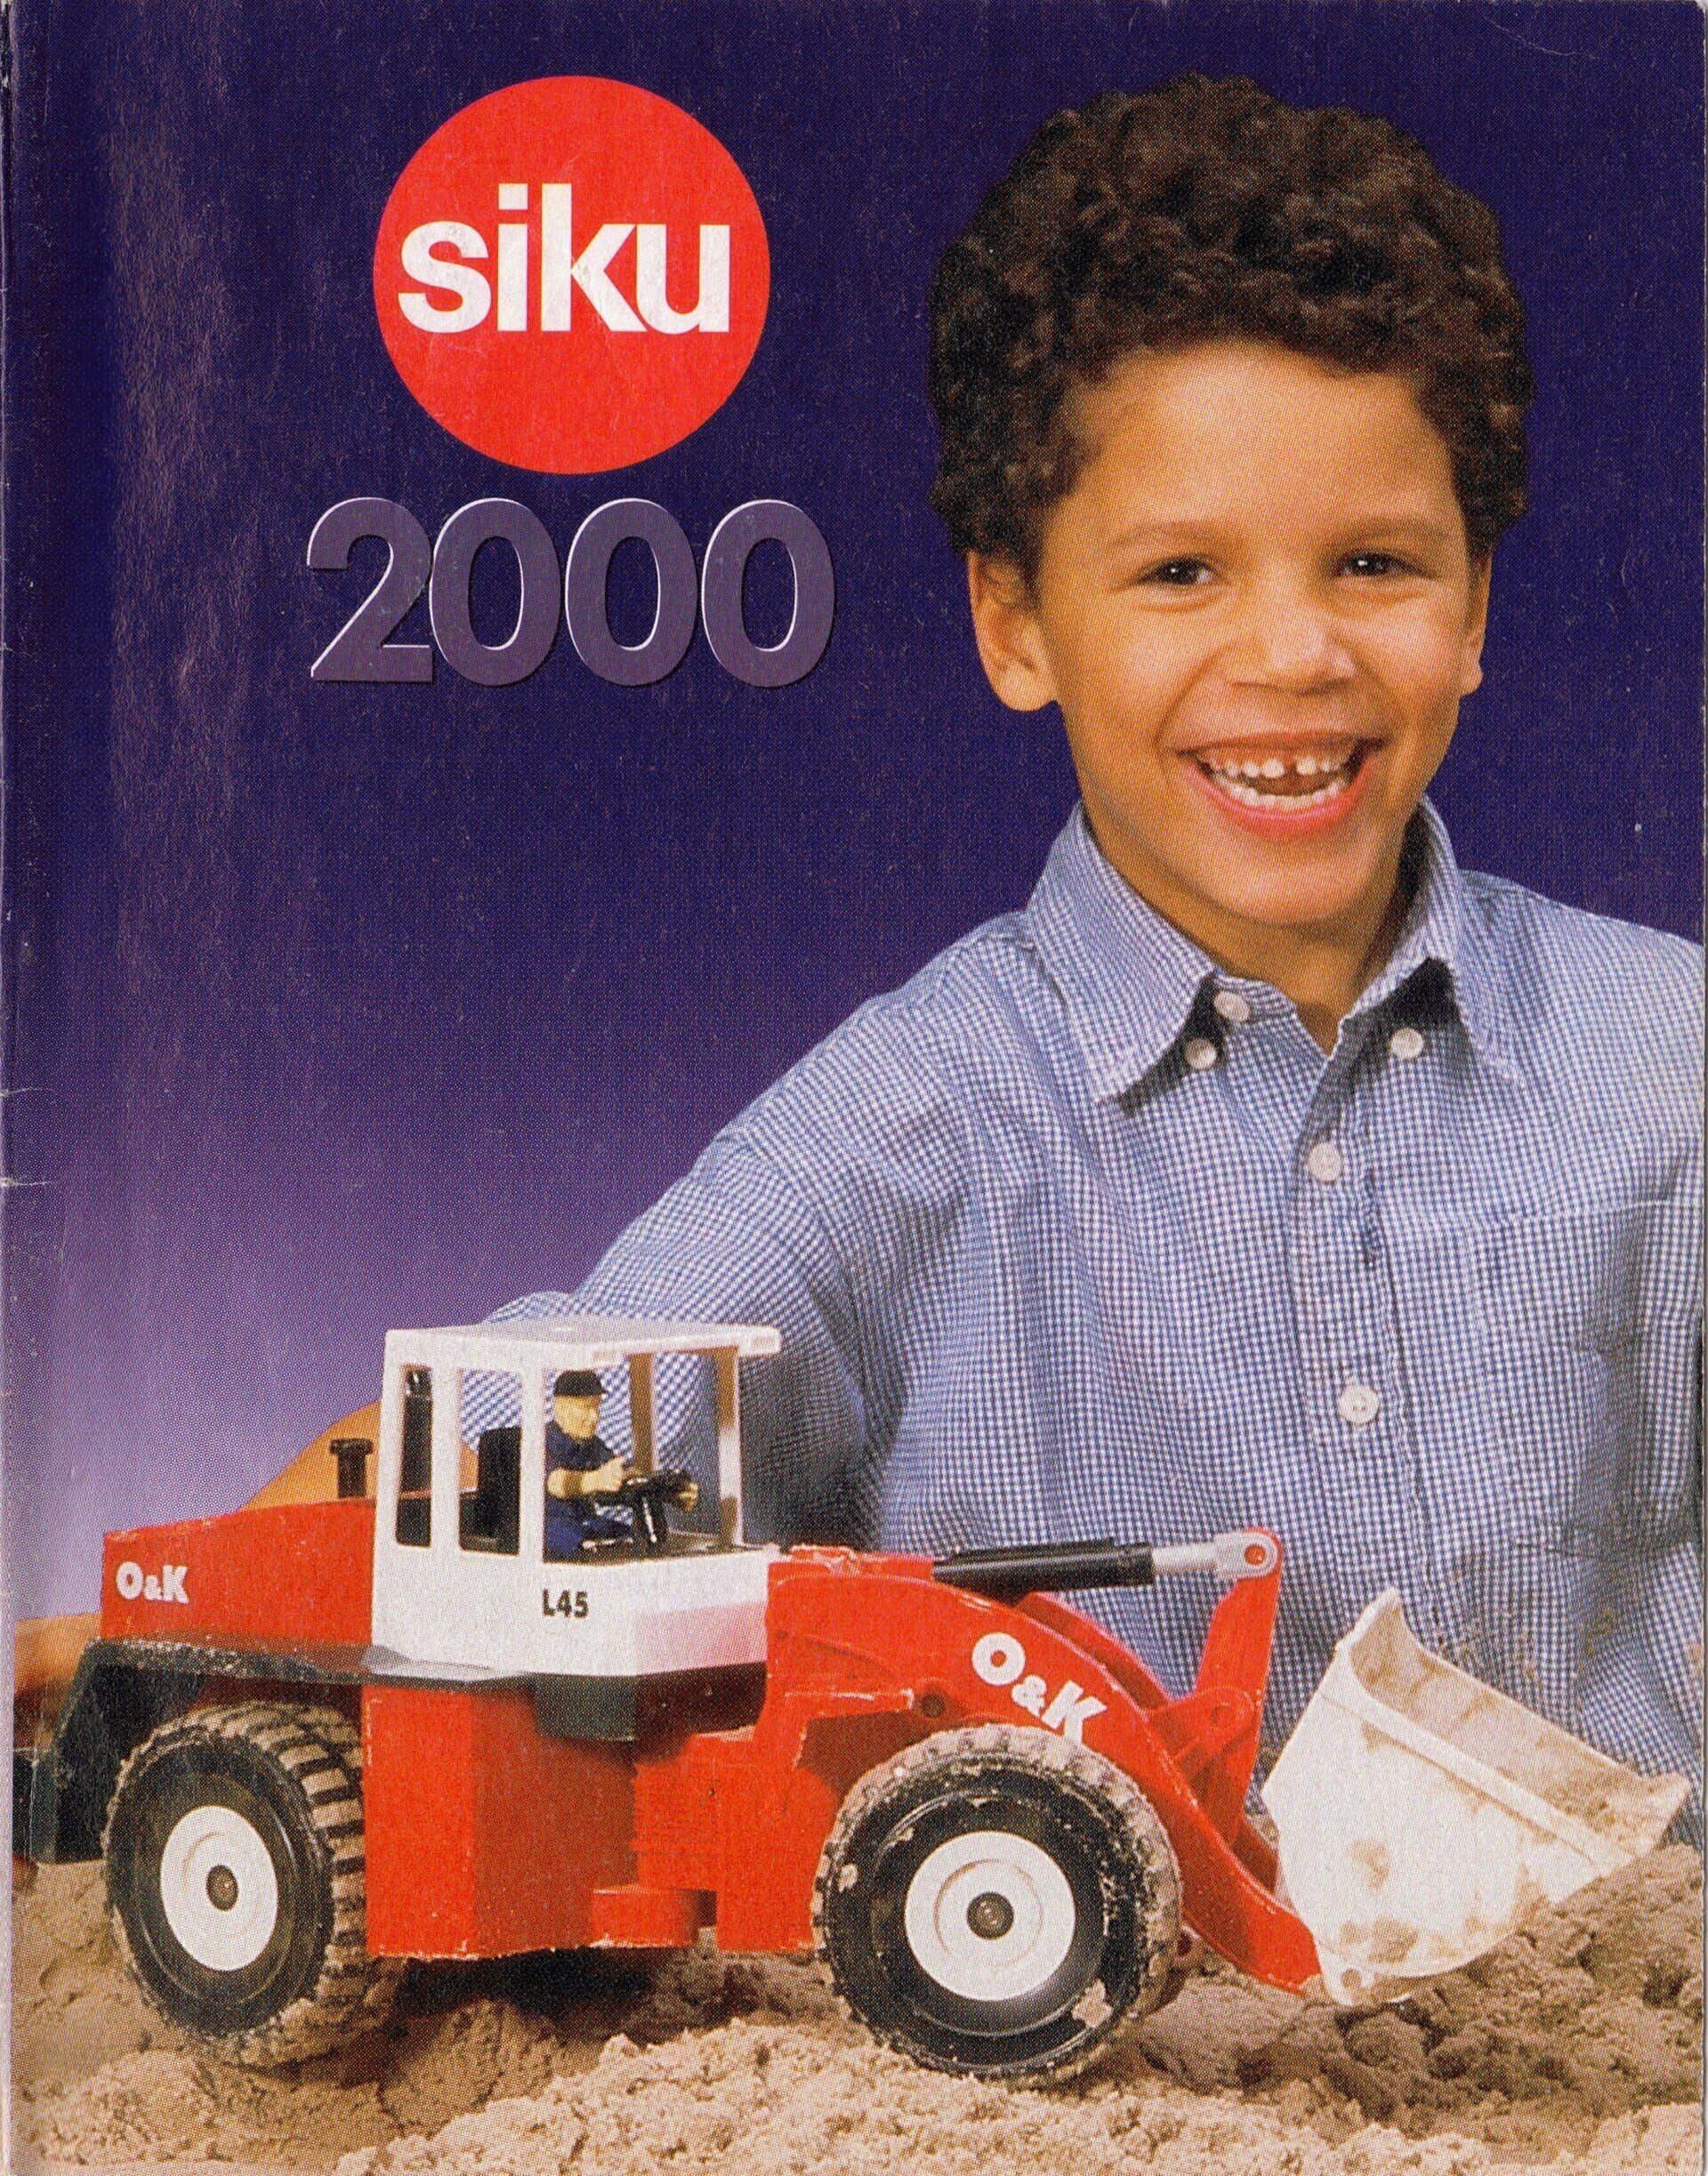 Siku catalogue 2000